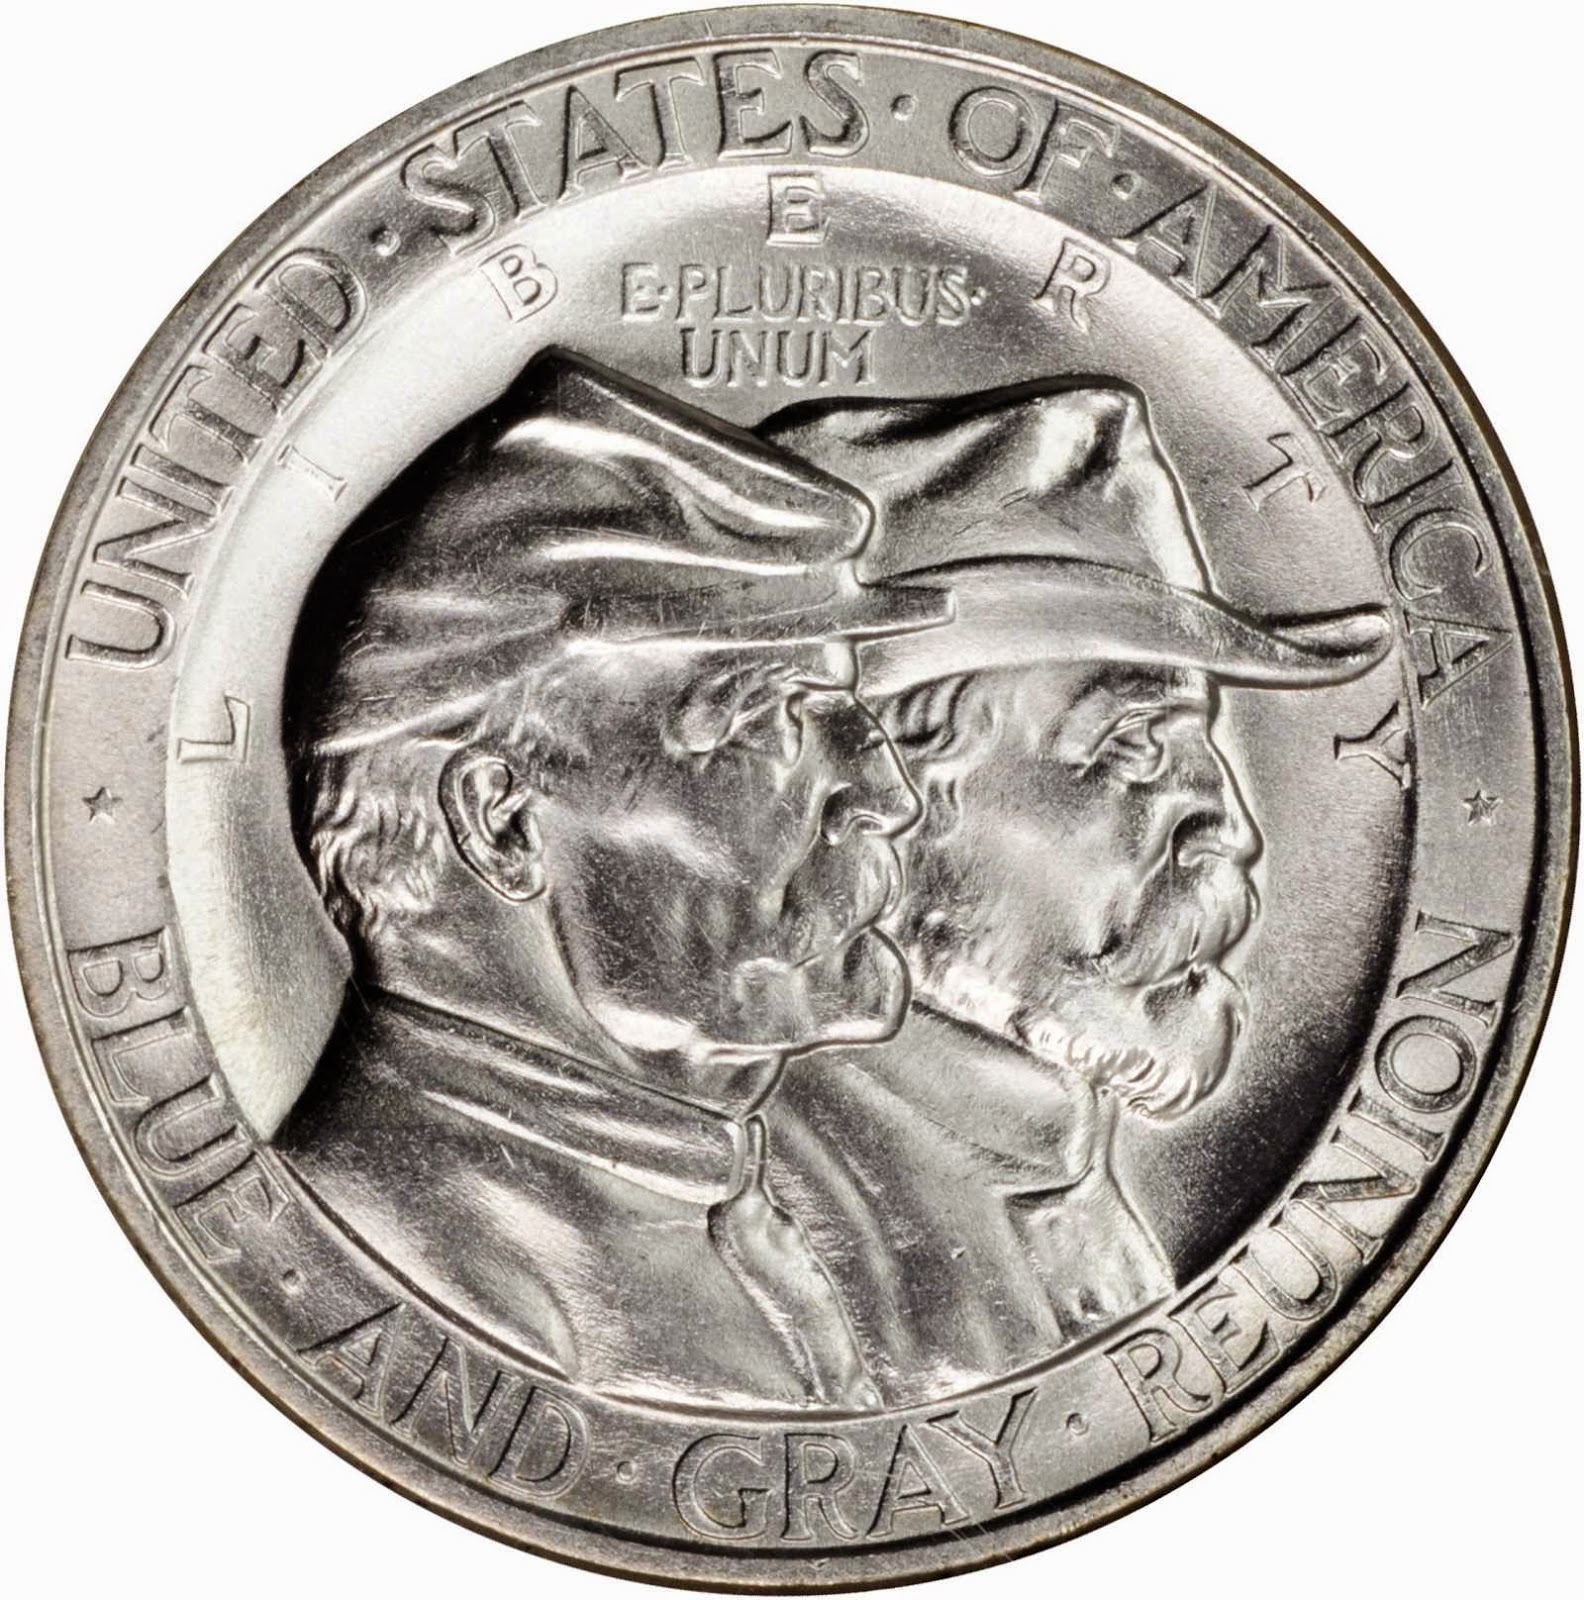 1936 Battle of Gettysburg Silver Half Dollar